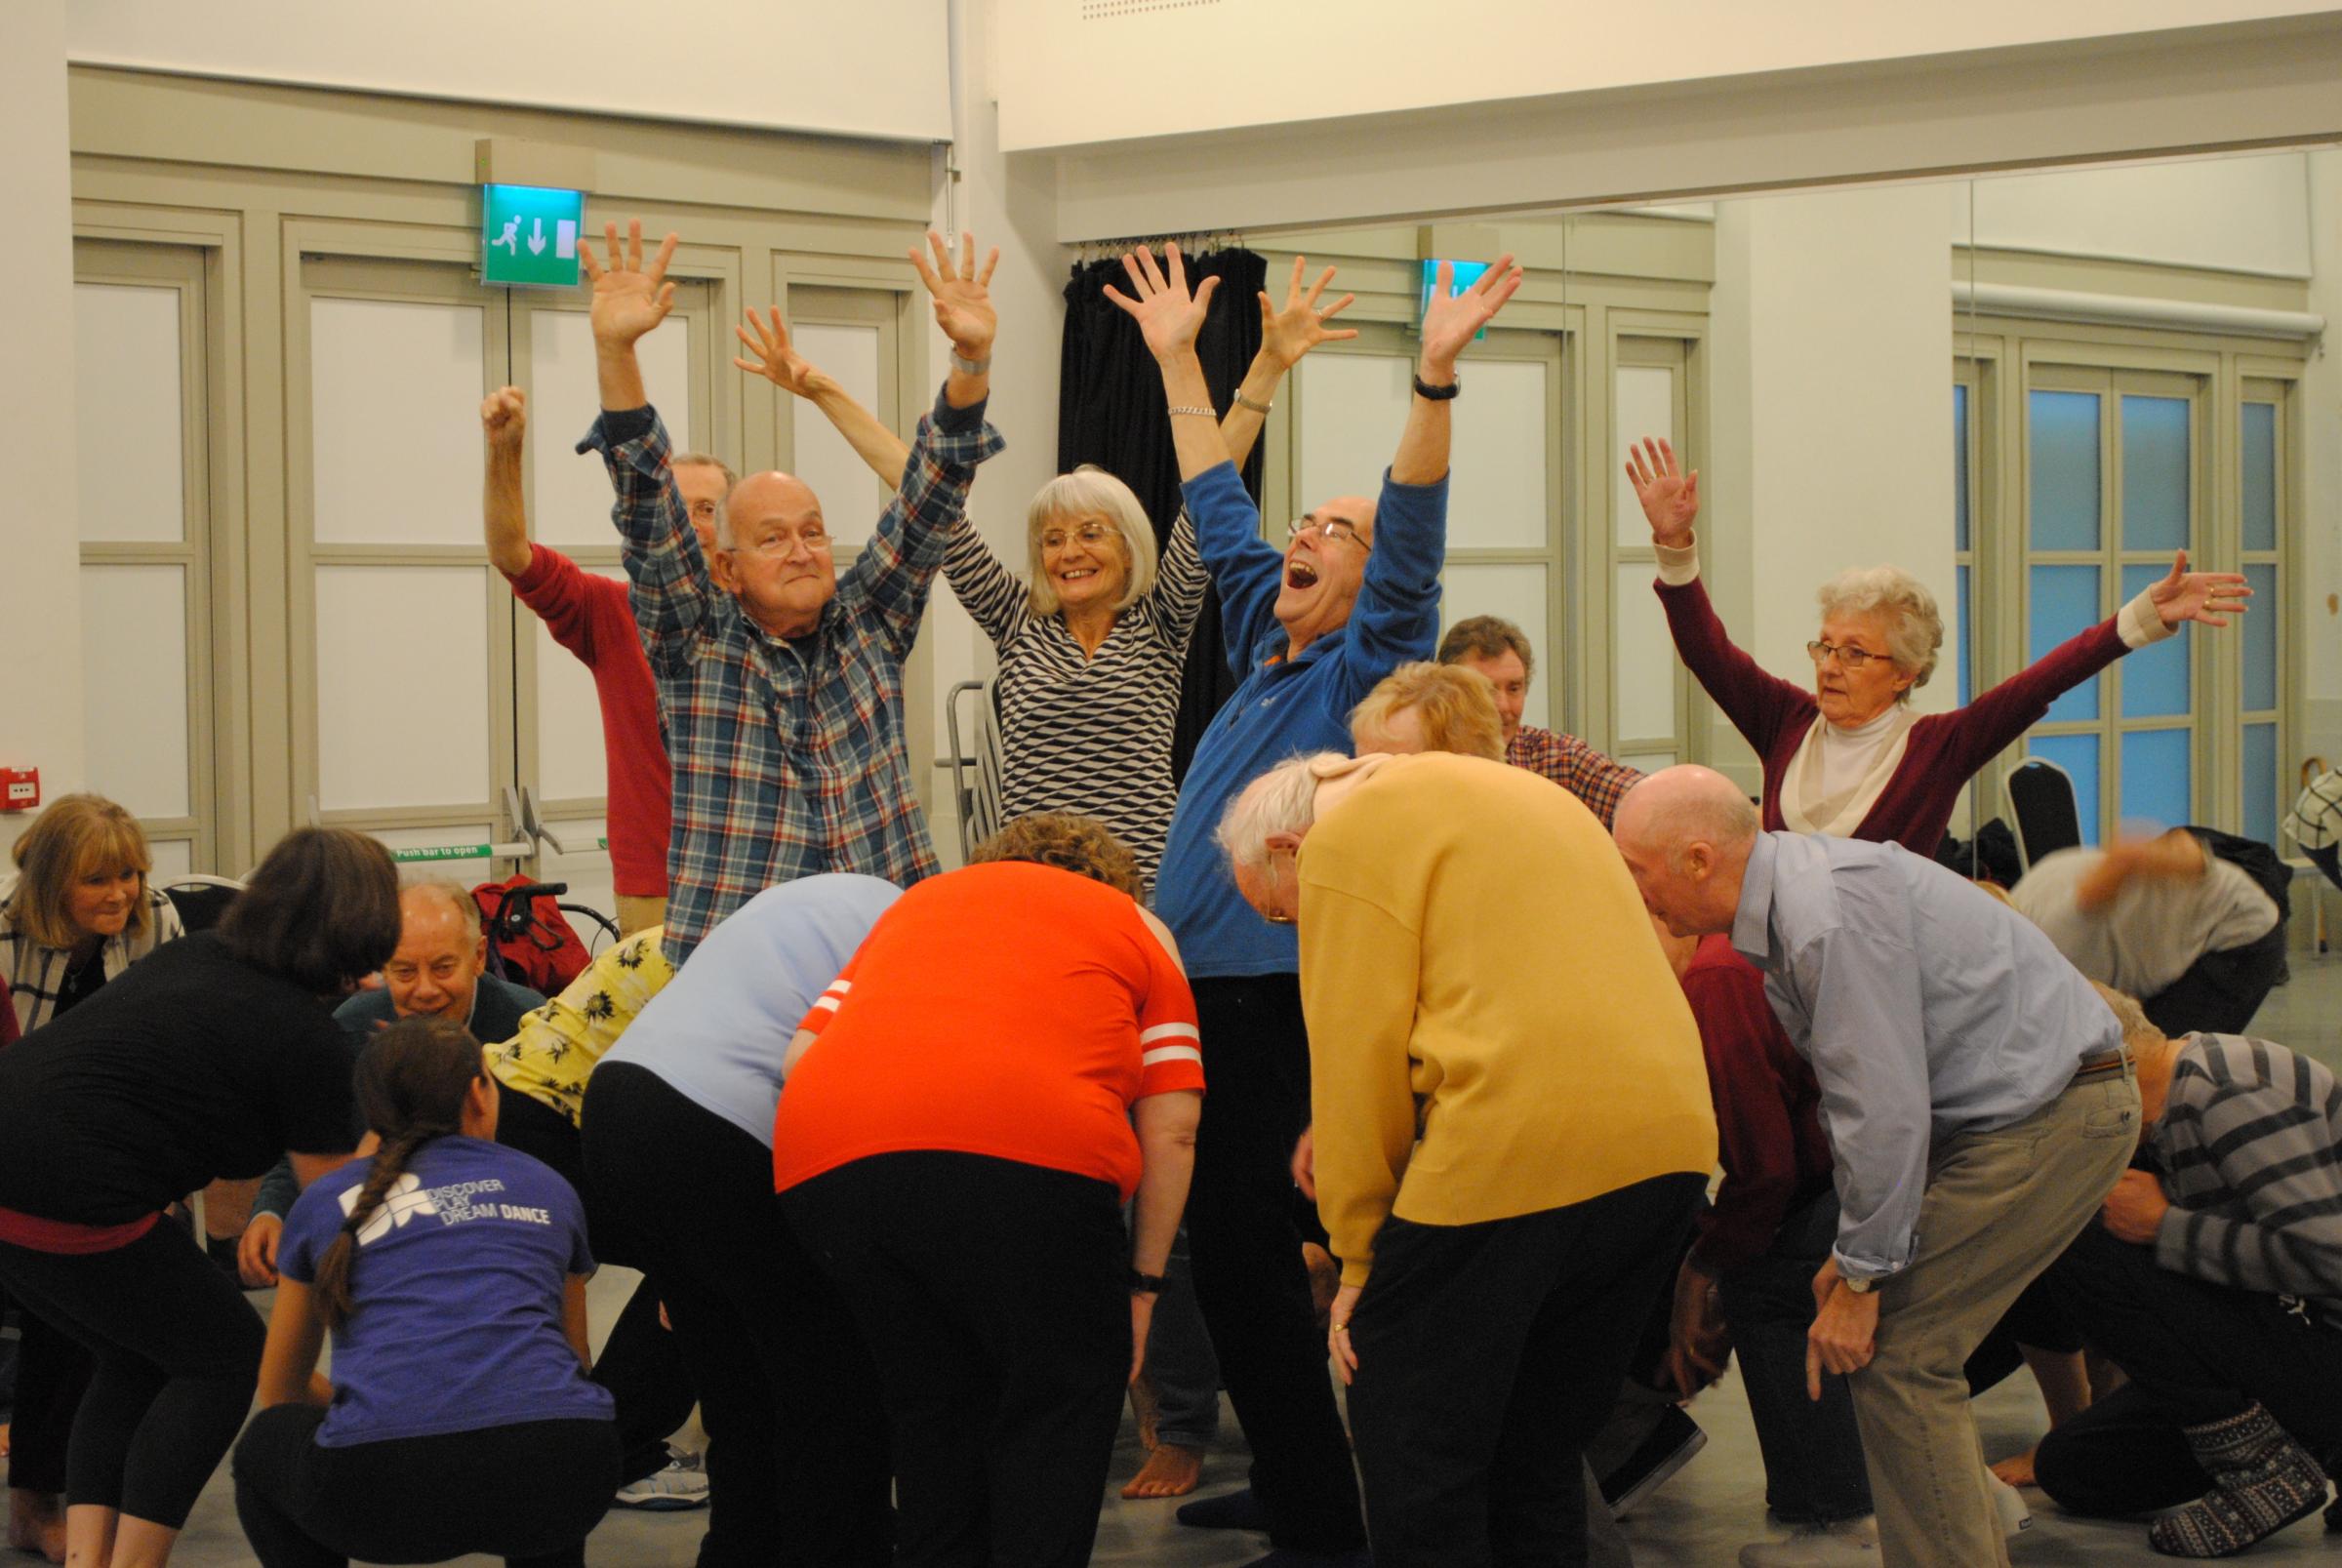 Pavilion Dance South West providing dance classes for people with Parkinson's disease - Dorset Echo